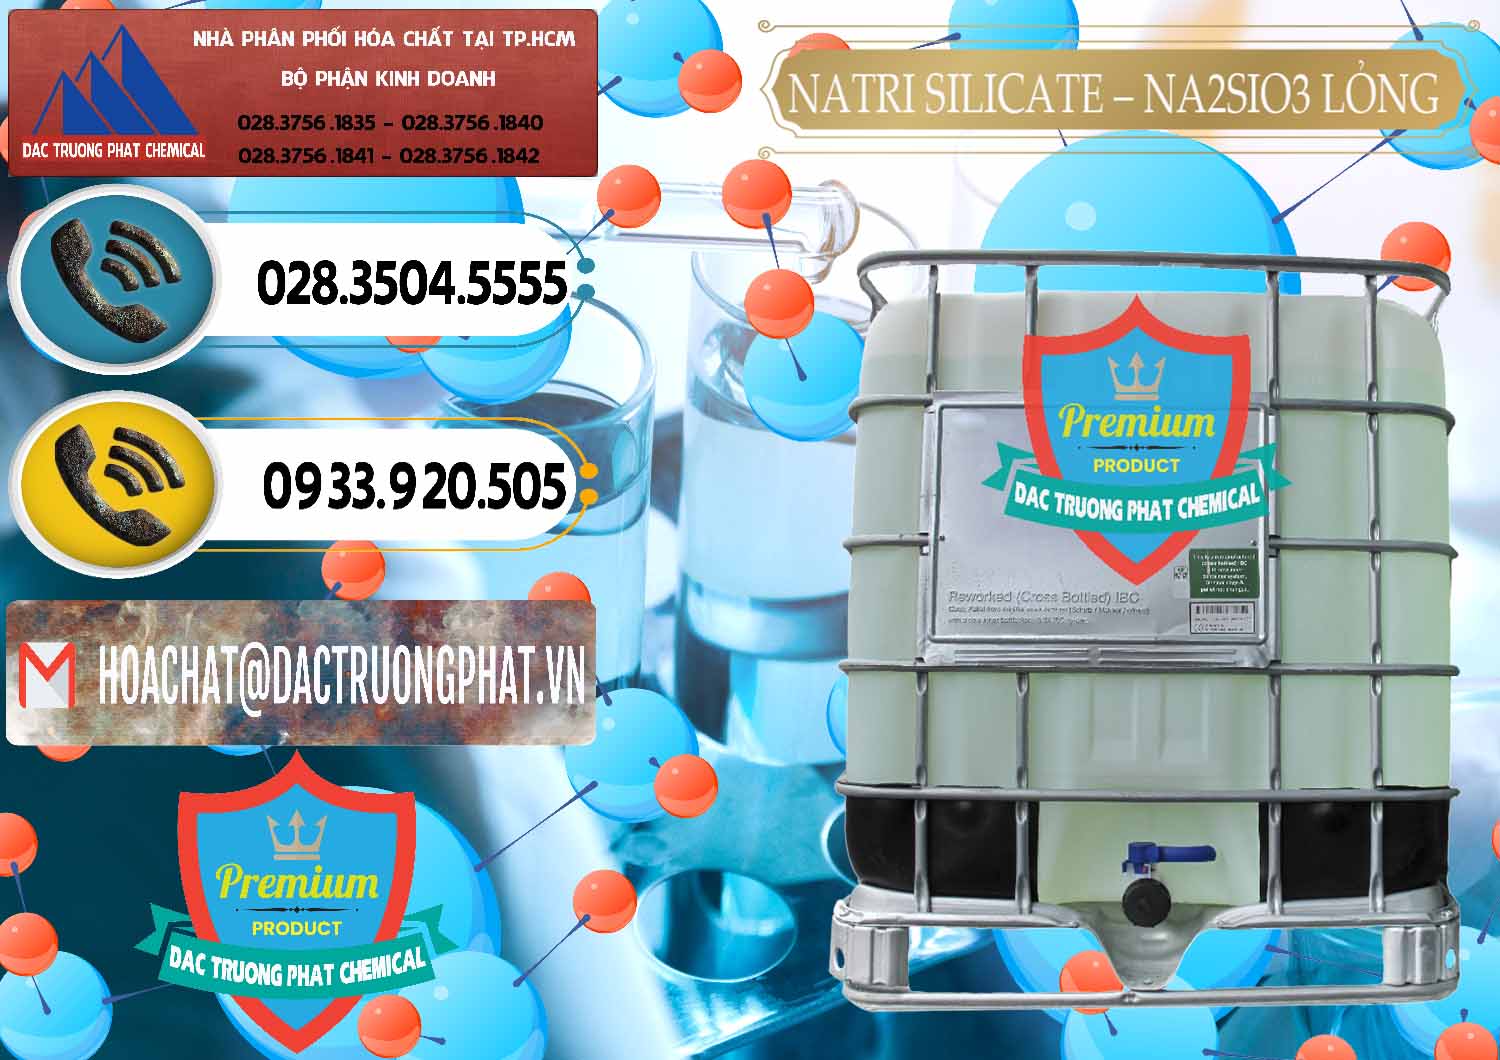 Cung ứng _ phân phối Natri Silicate - Na2SiO3 - Keo Silicate Lỏng Việt Nam - 0191 - Kinh doanh _ phân phối hóa chất tại TP.HCM - hoachatdetnhuom.vn